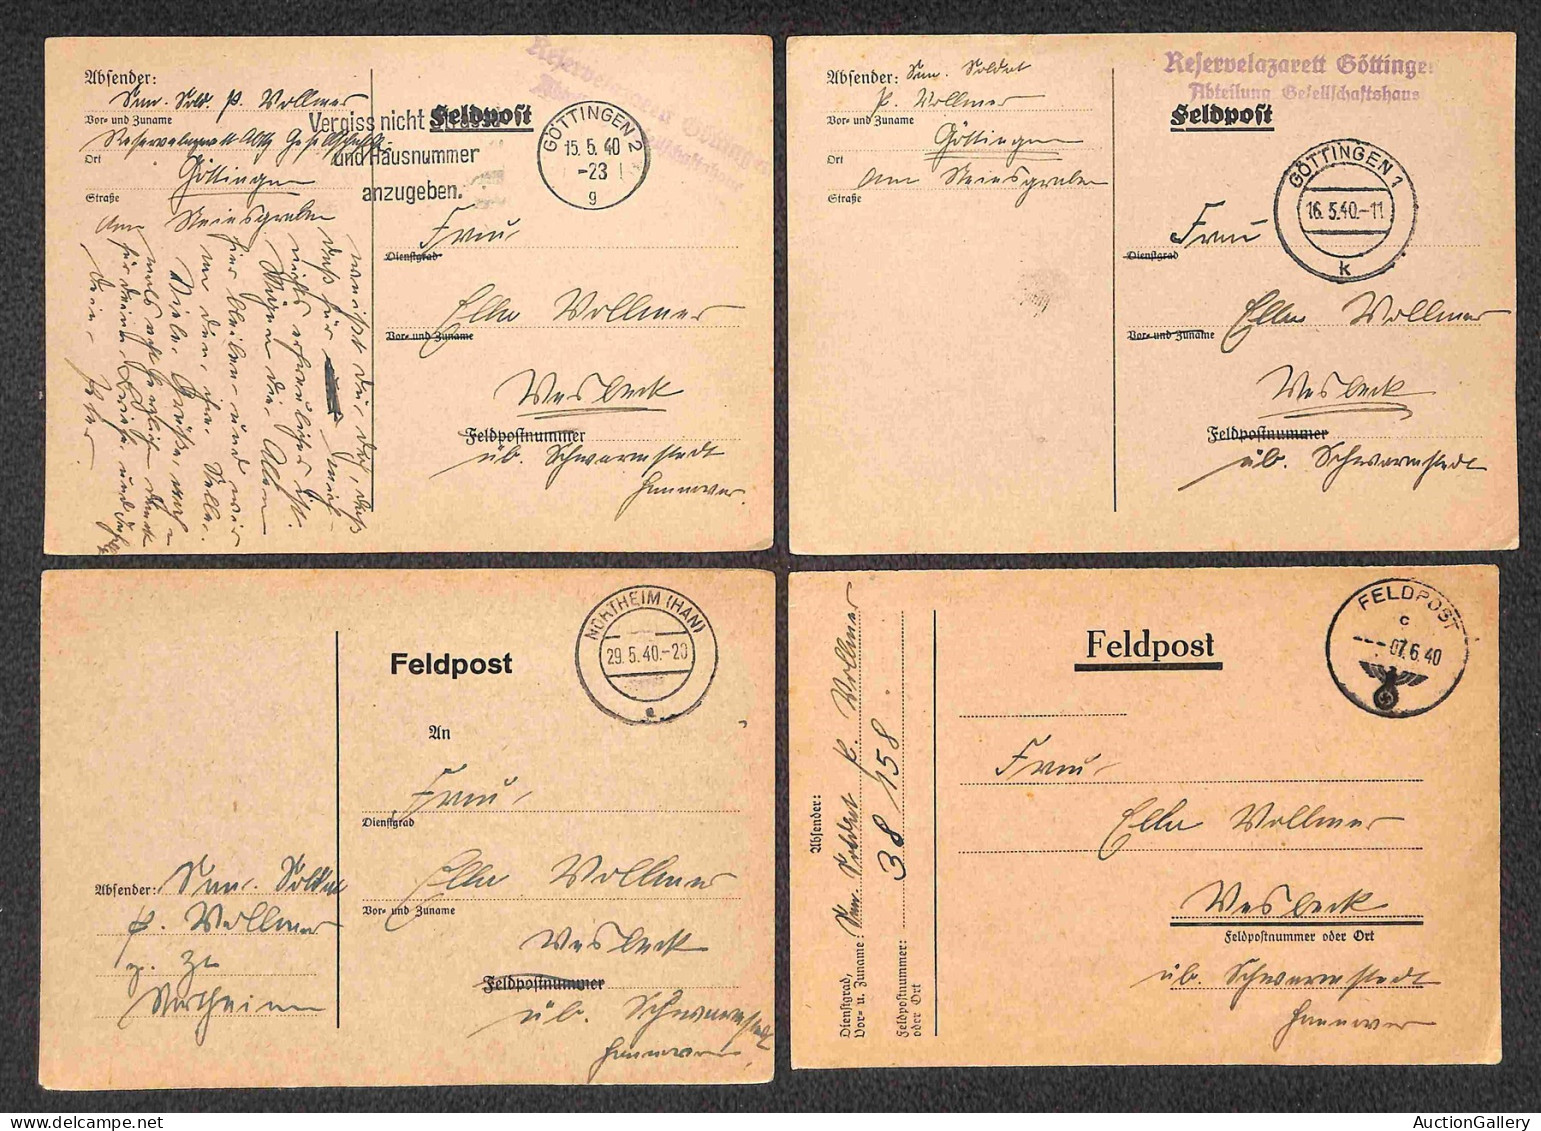 Europa - Germania - Feldpost - 1939/1944 - Ventidue cartoline in franchigia del periodo